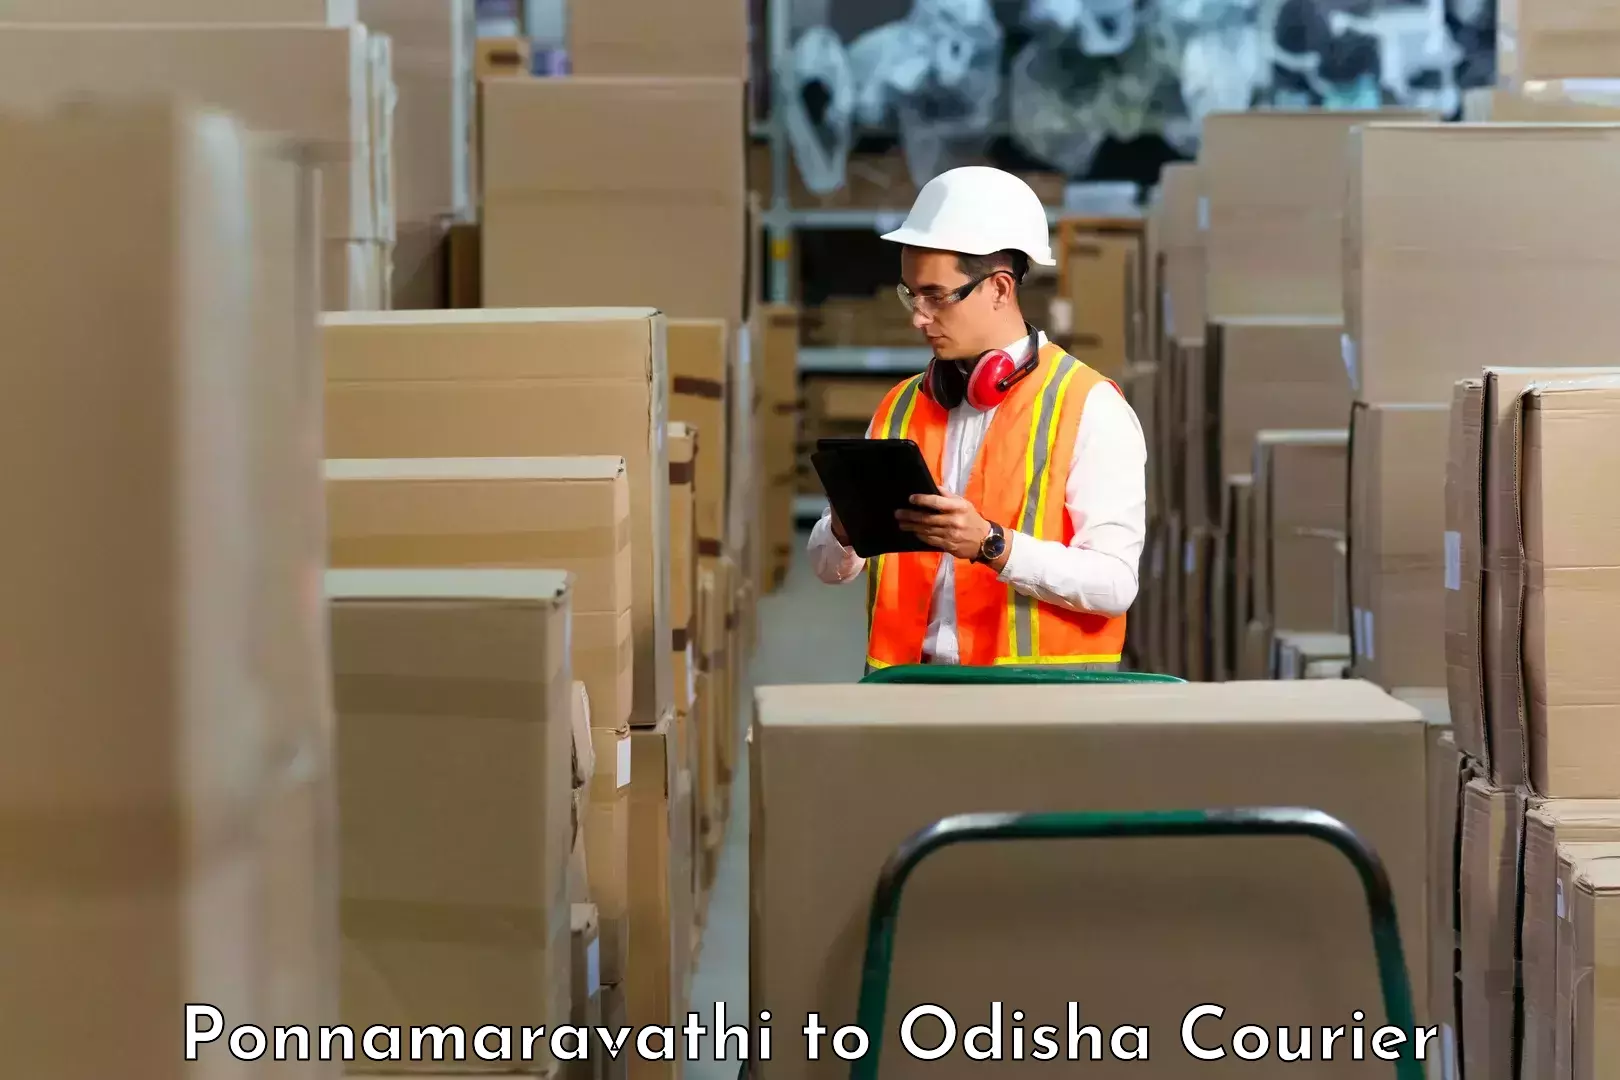 Large-scale shipping solutions Ponnamaravathi to Turanga